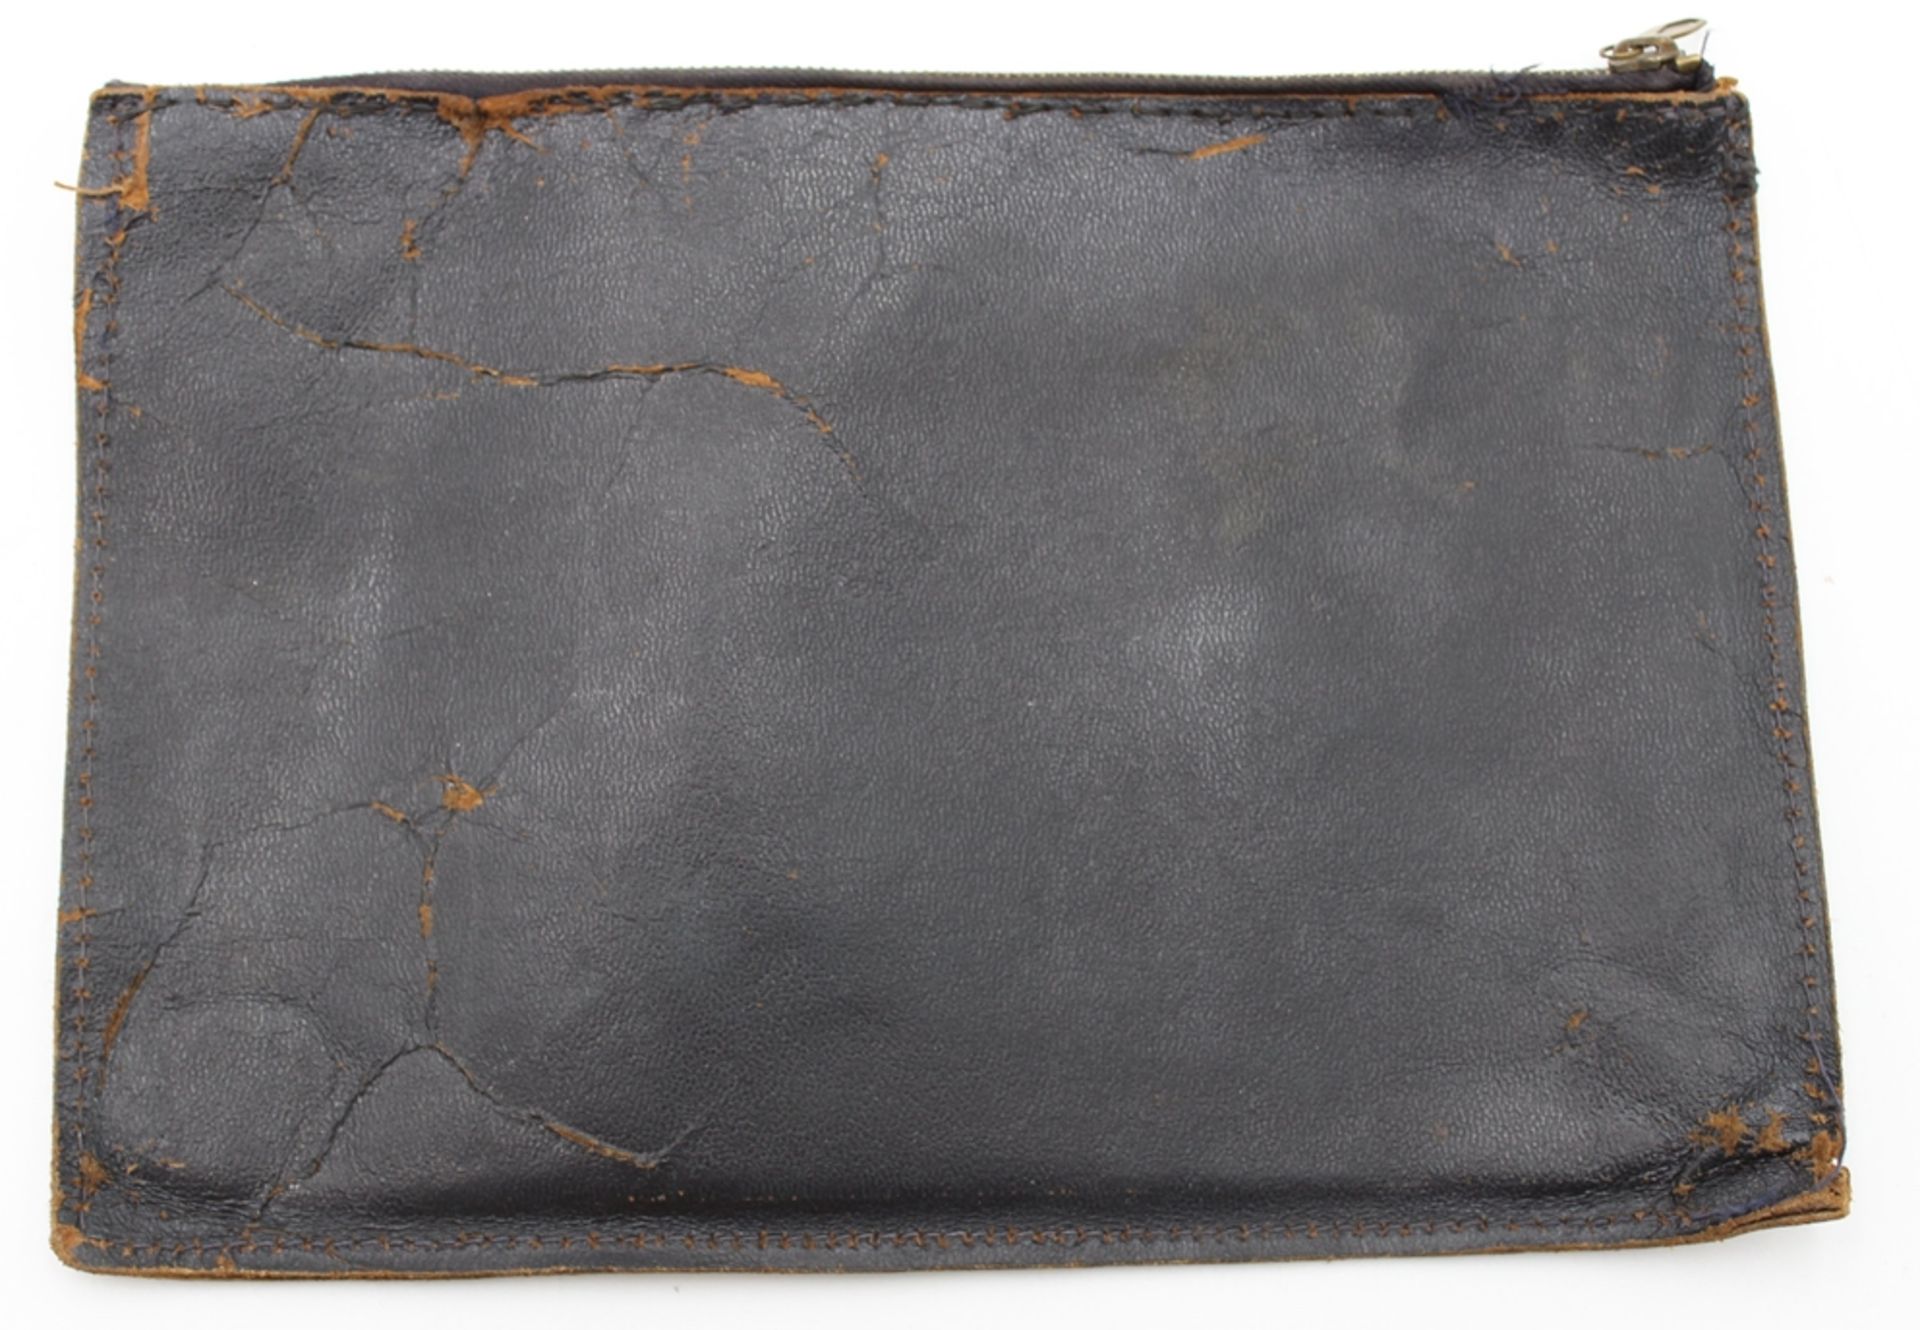 Borgward-Wagenpapiere Mappe, älter, Leder, Gebrauchsspuren, 17 x 24,5cm. - Bild 3 aus 3